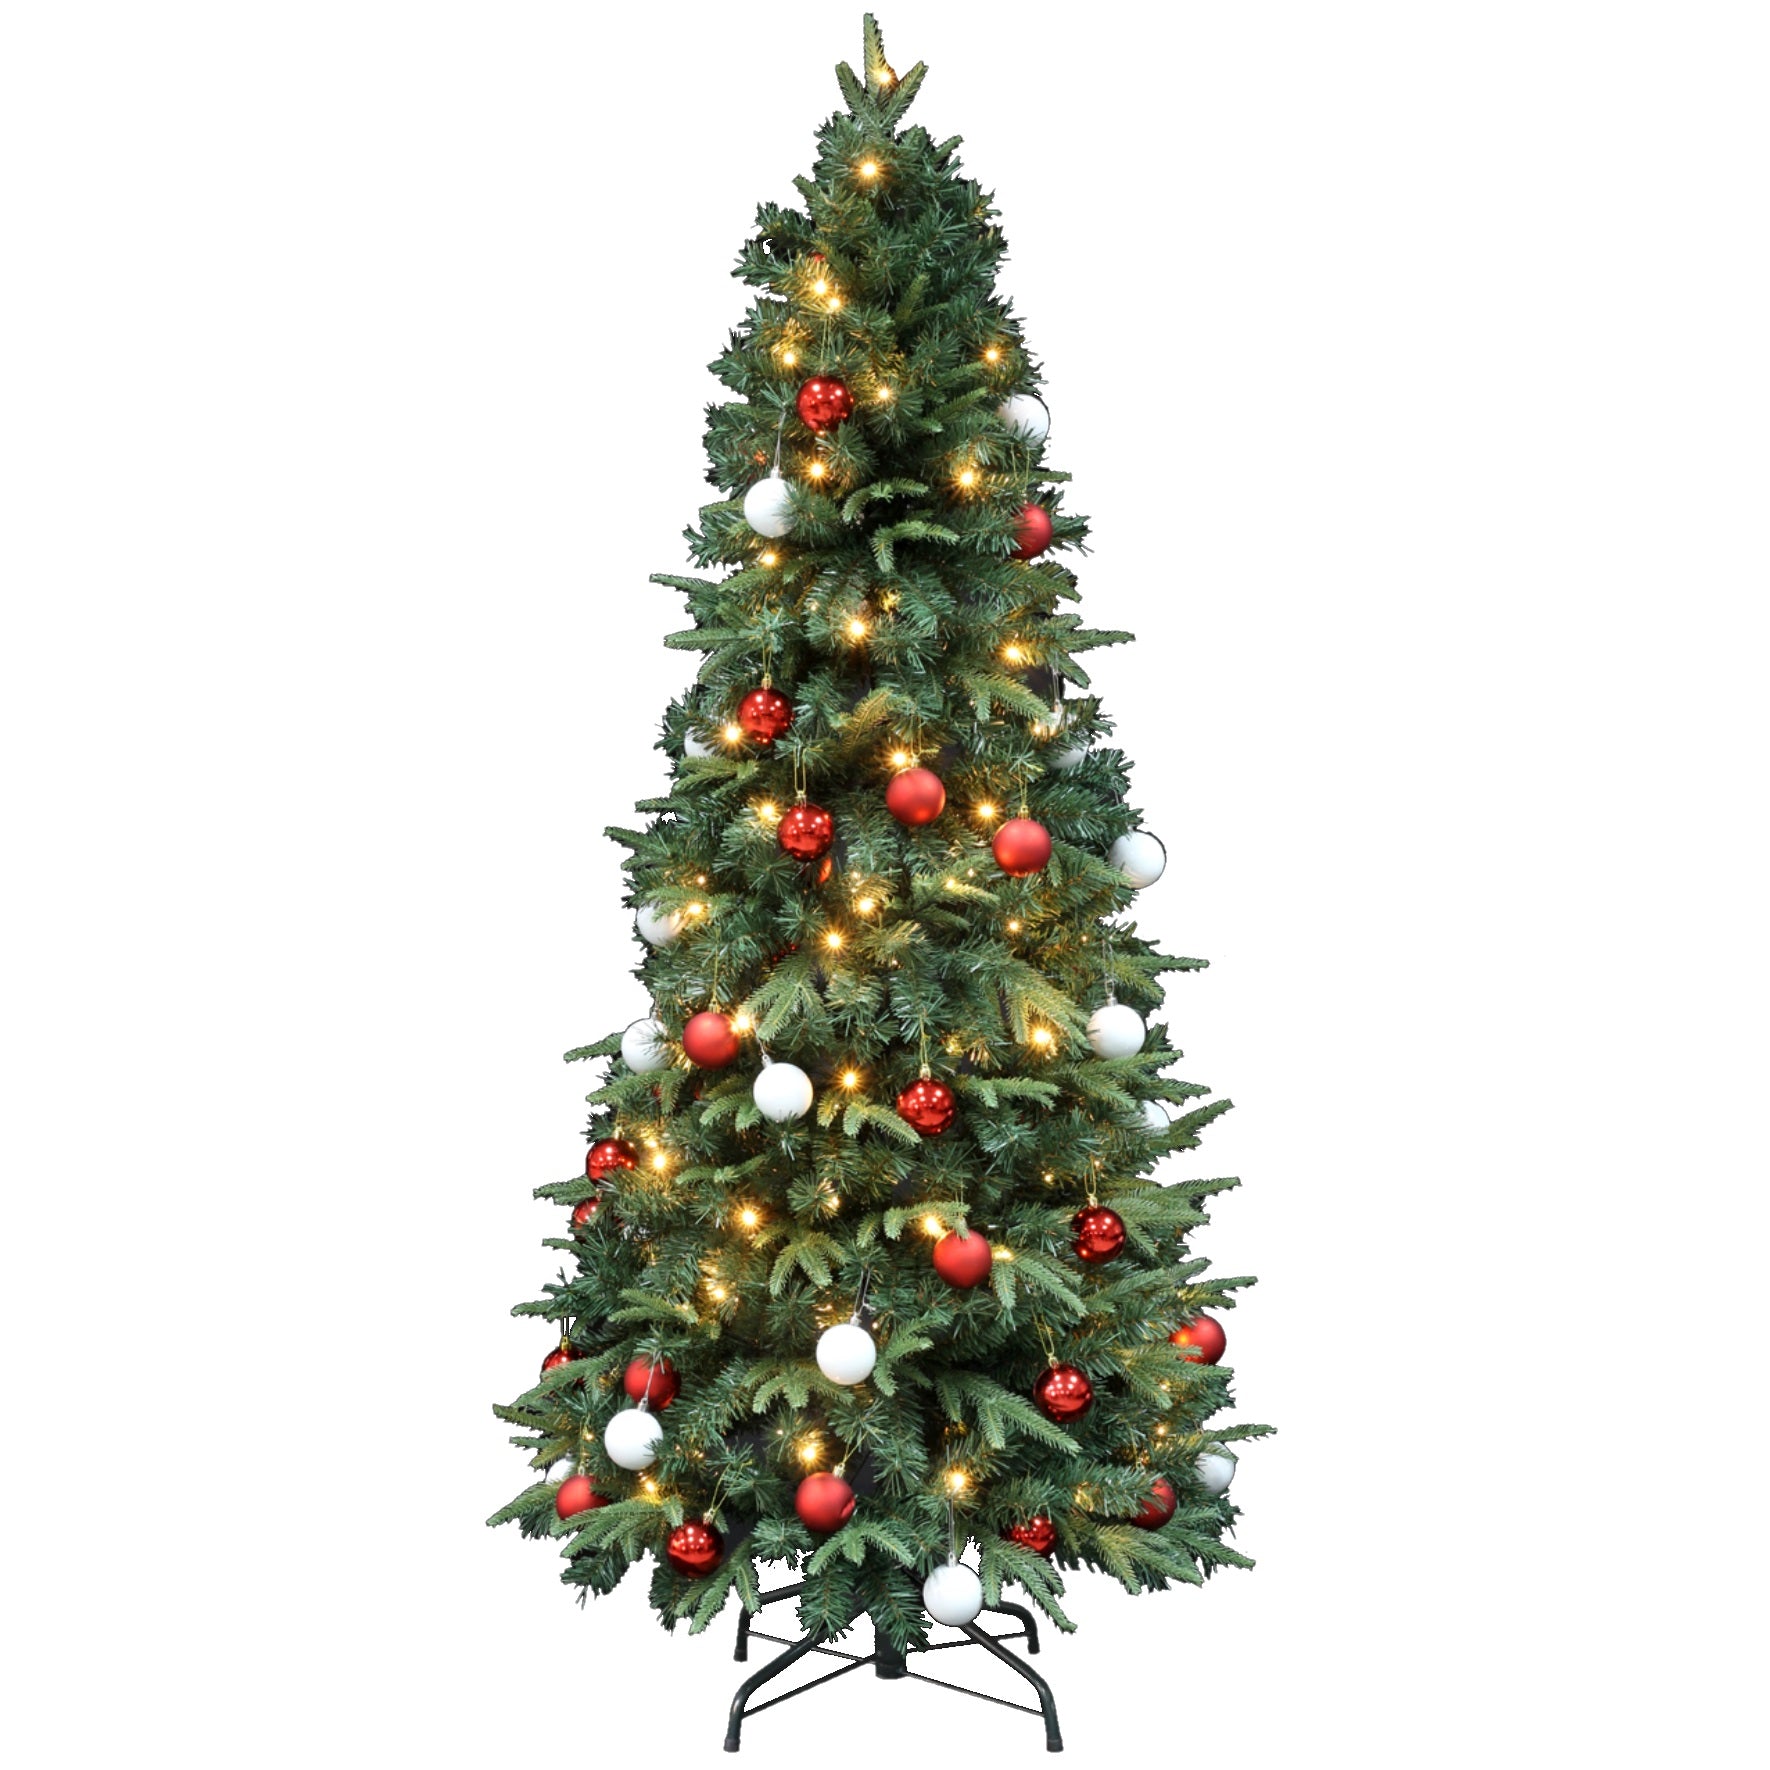 Weihnachtsbaum mit Dekoration Easy Set Up Tree® LED Avik Rot 180 cm - 240 Lichter